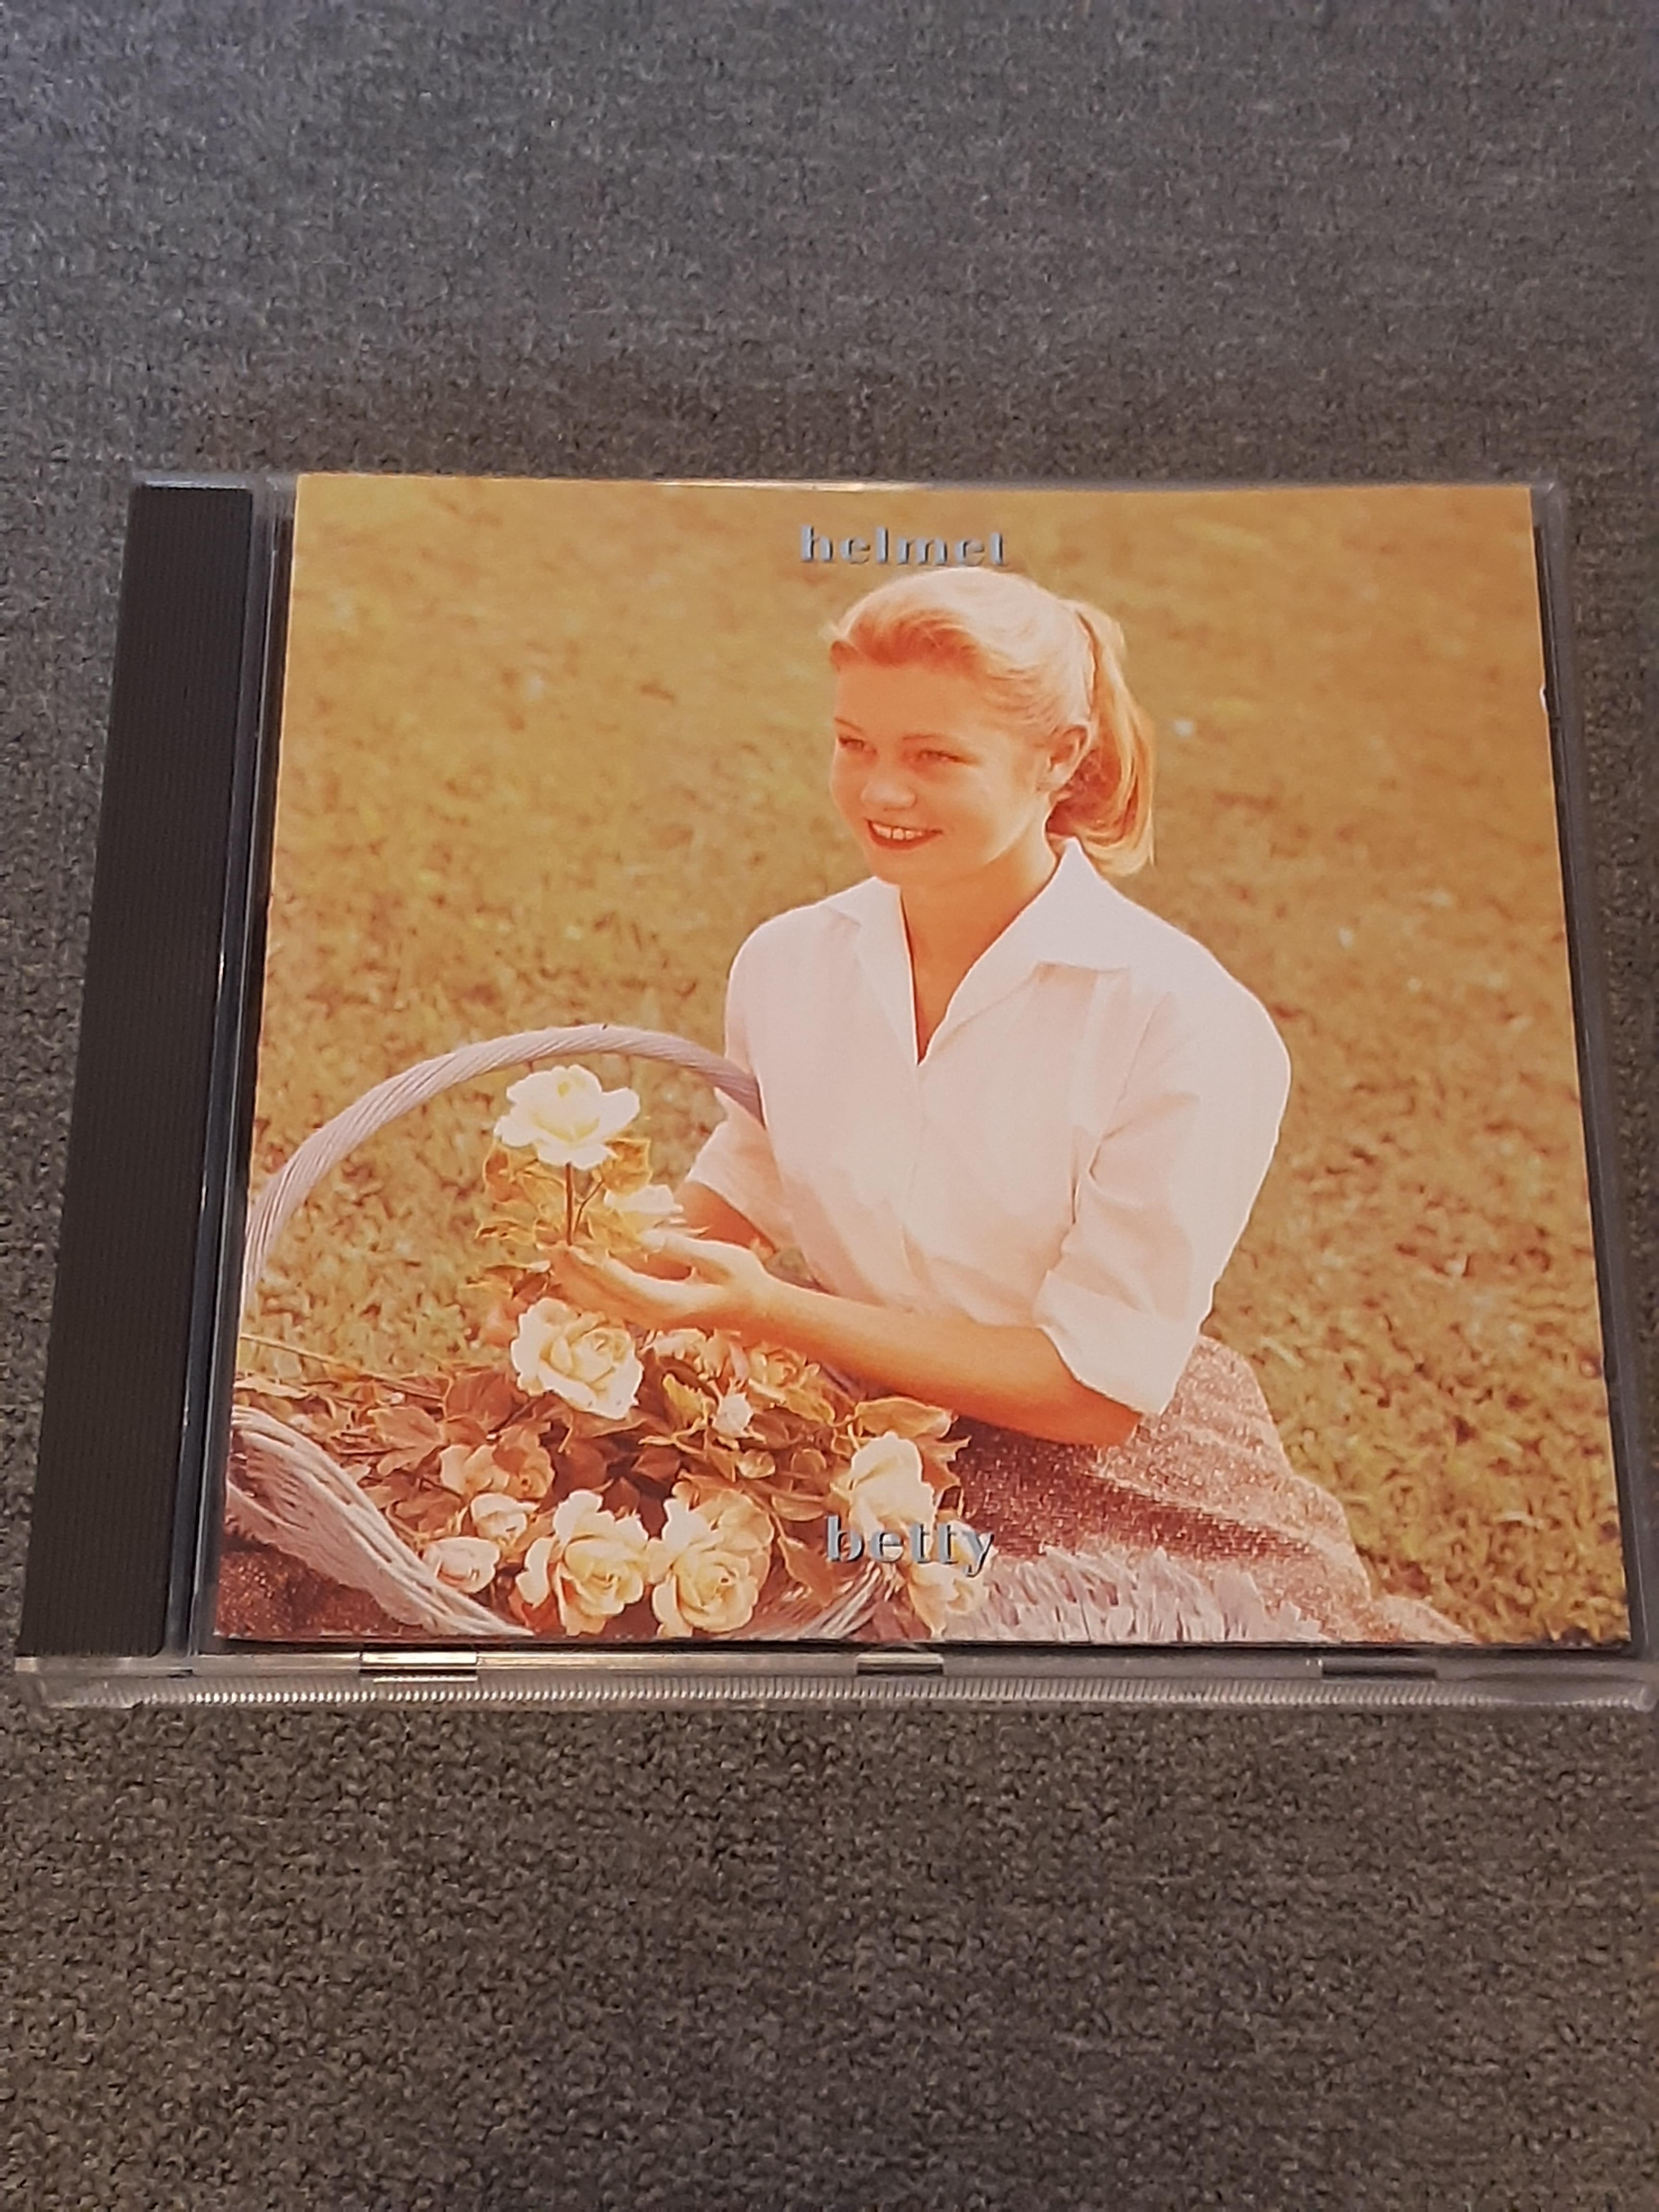 Helmet - Betty - CD (käytetty)